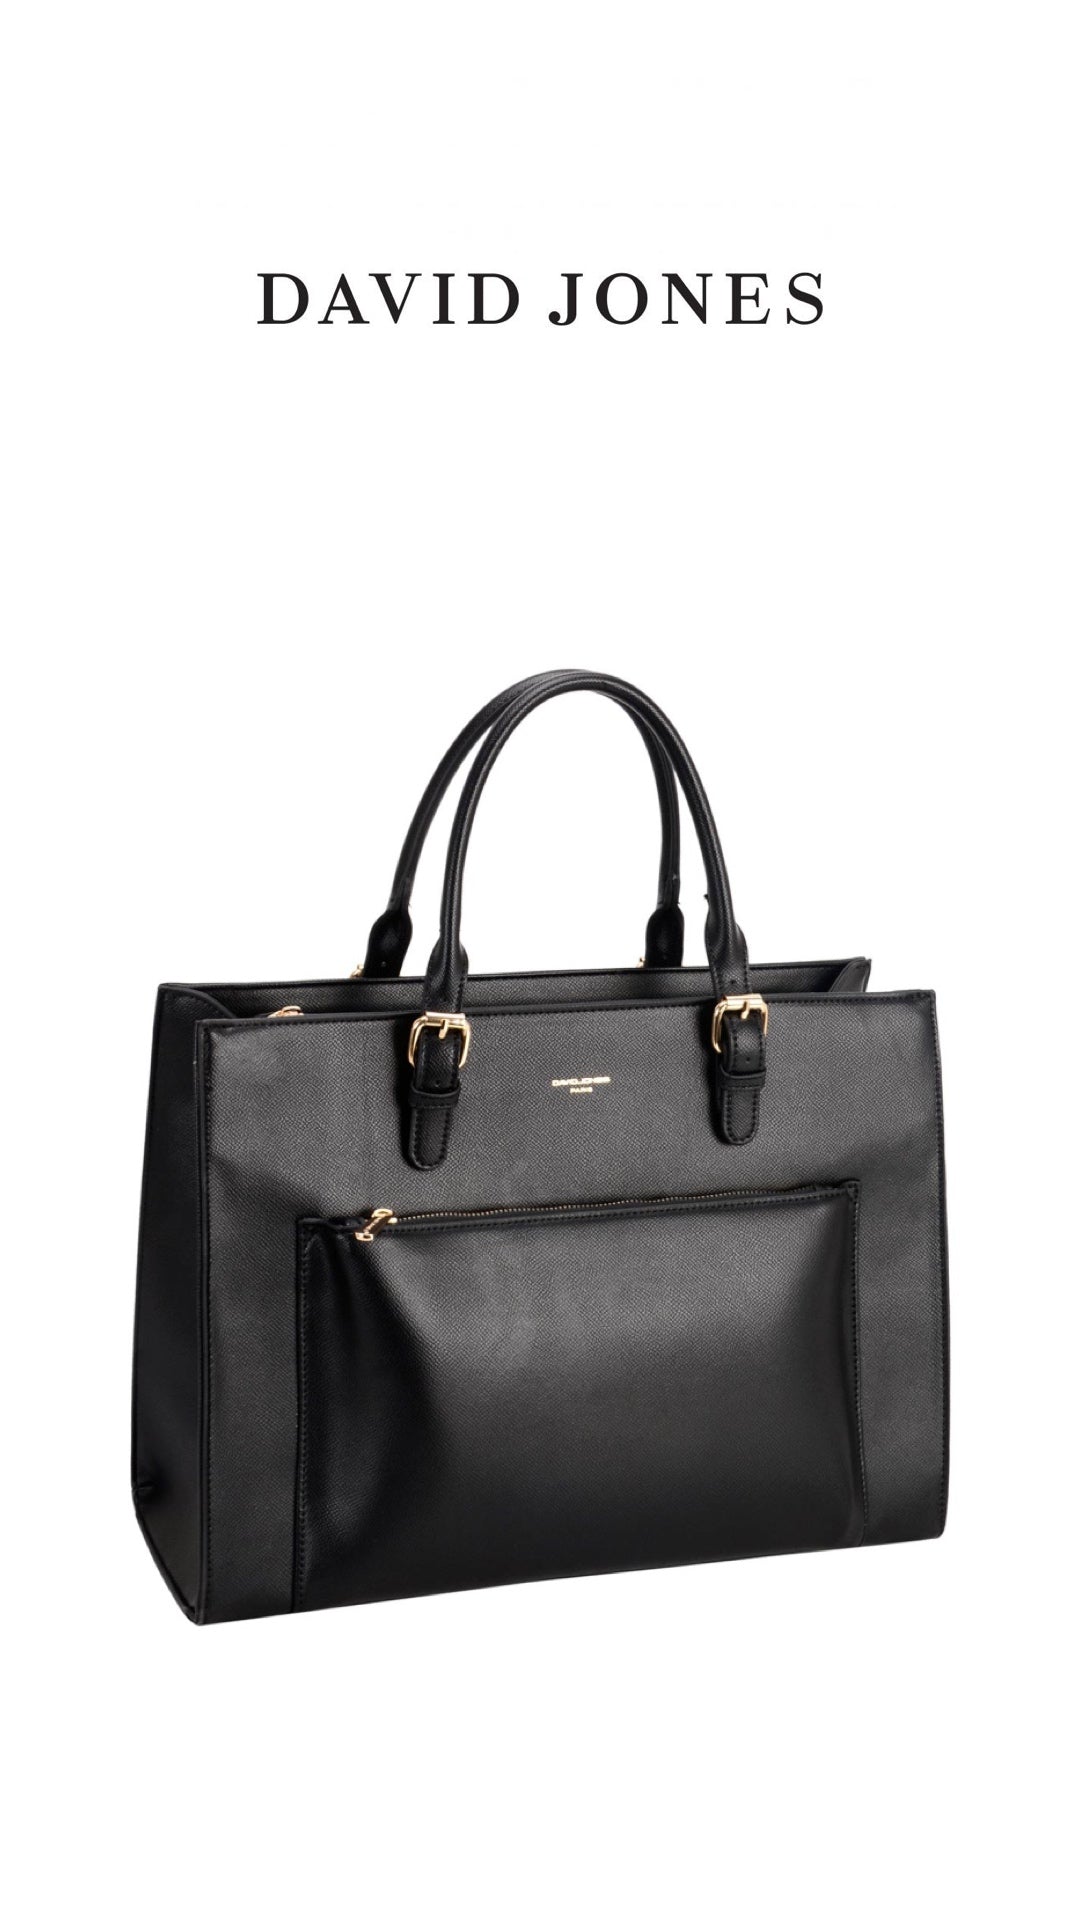 Wholesaler David Jones: handbags | ModaServerPro m4b9